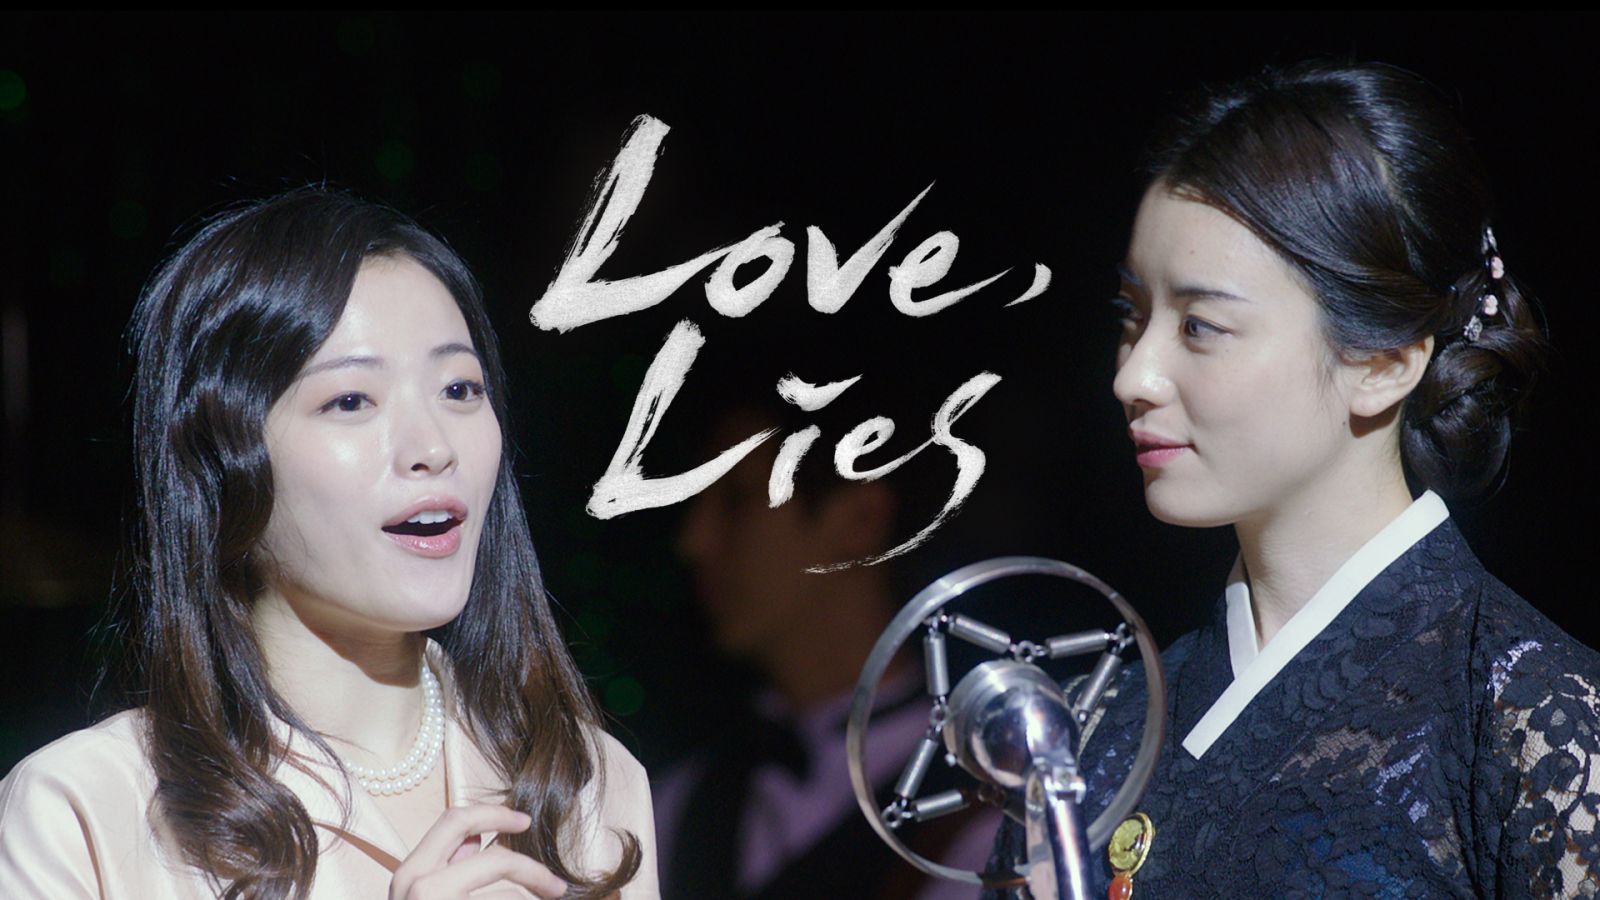 Tình yêu giả dối - Love, lies